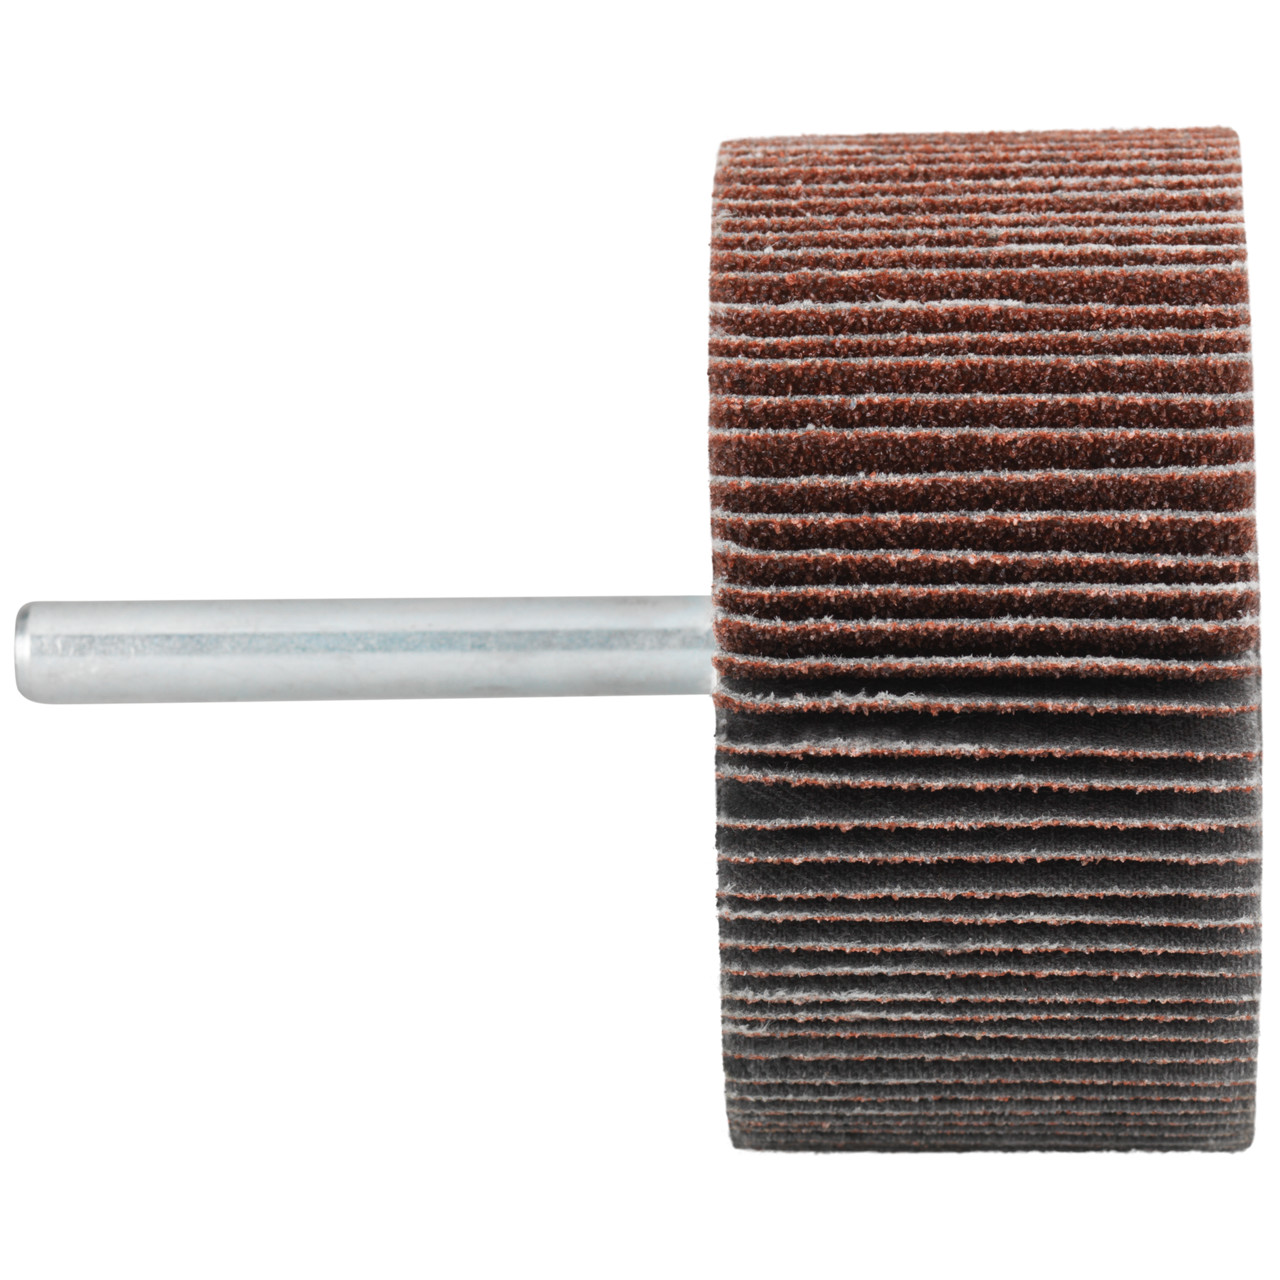 Tyrolit A-P01 C X Pennen DxD 80x30 Voor staal, roestvast staal en non-ferrometalen, P60, vorm: 52LA, Art. 816981